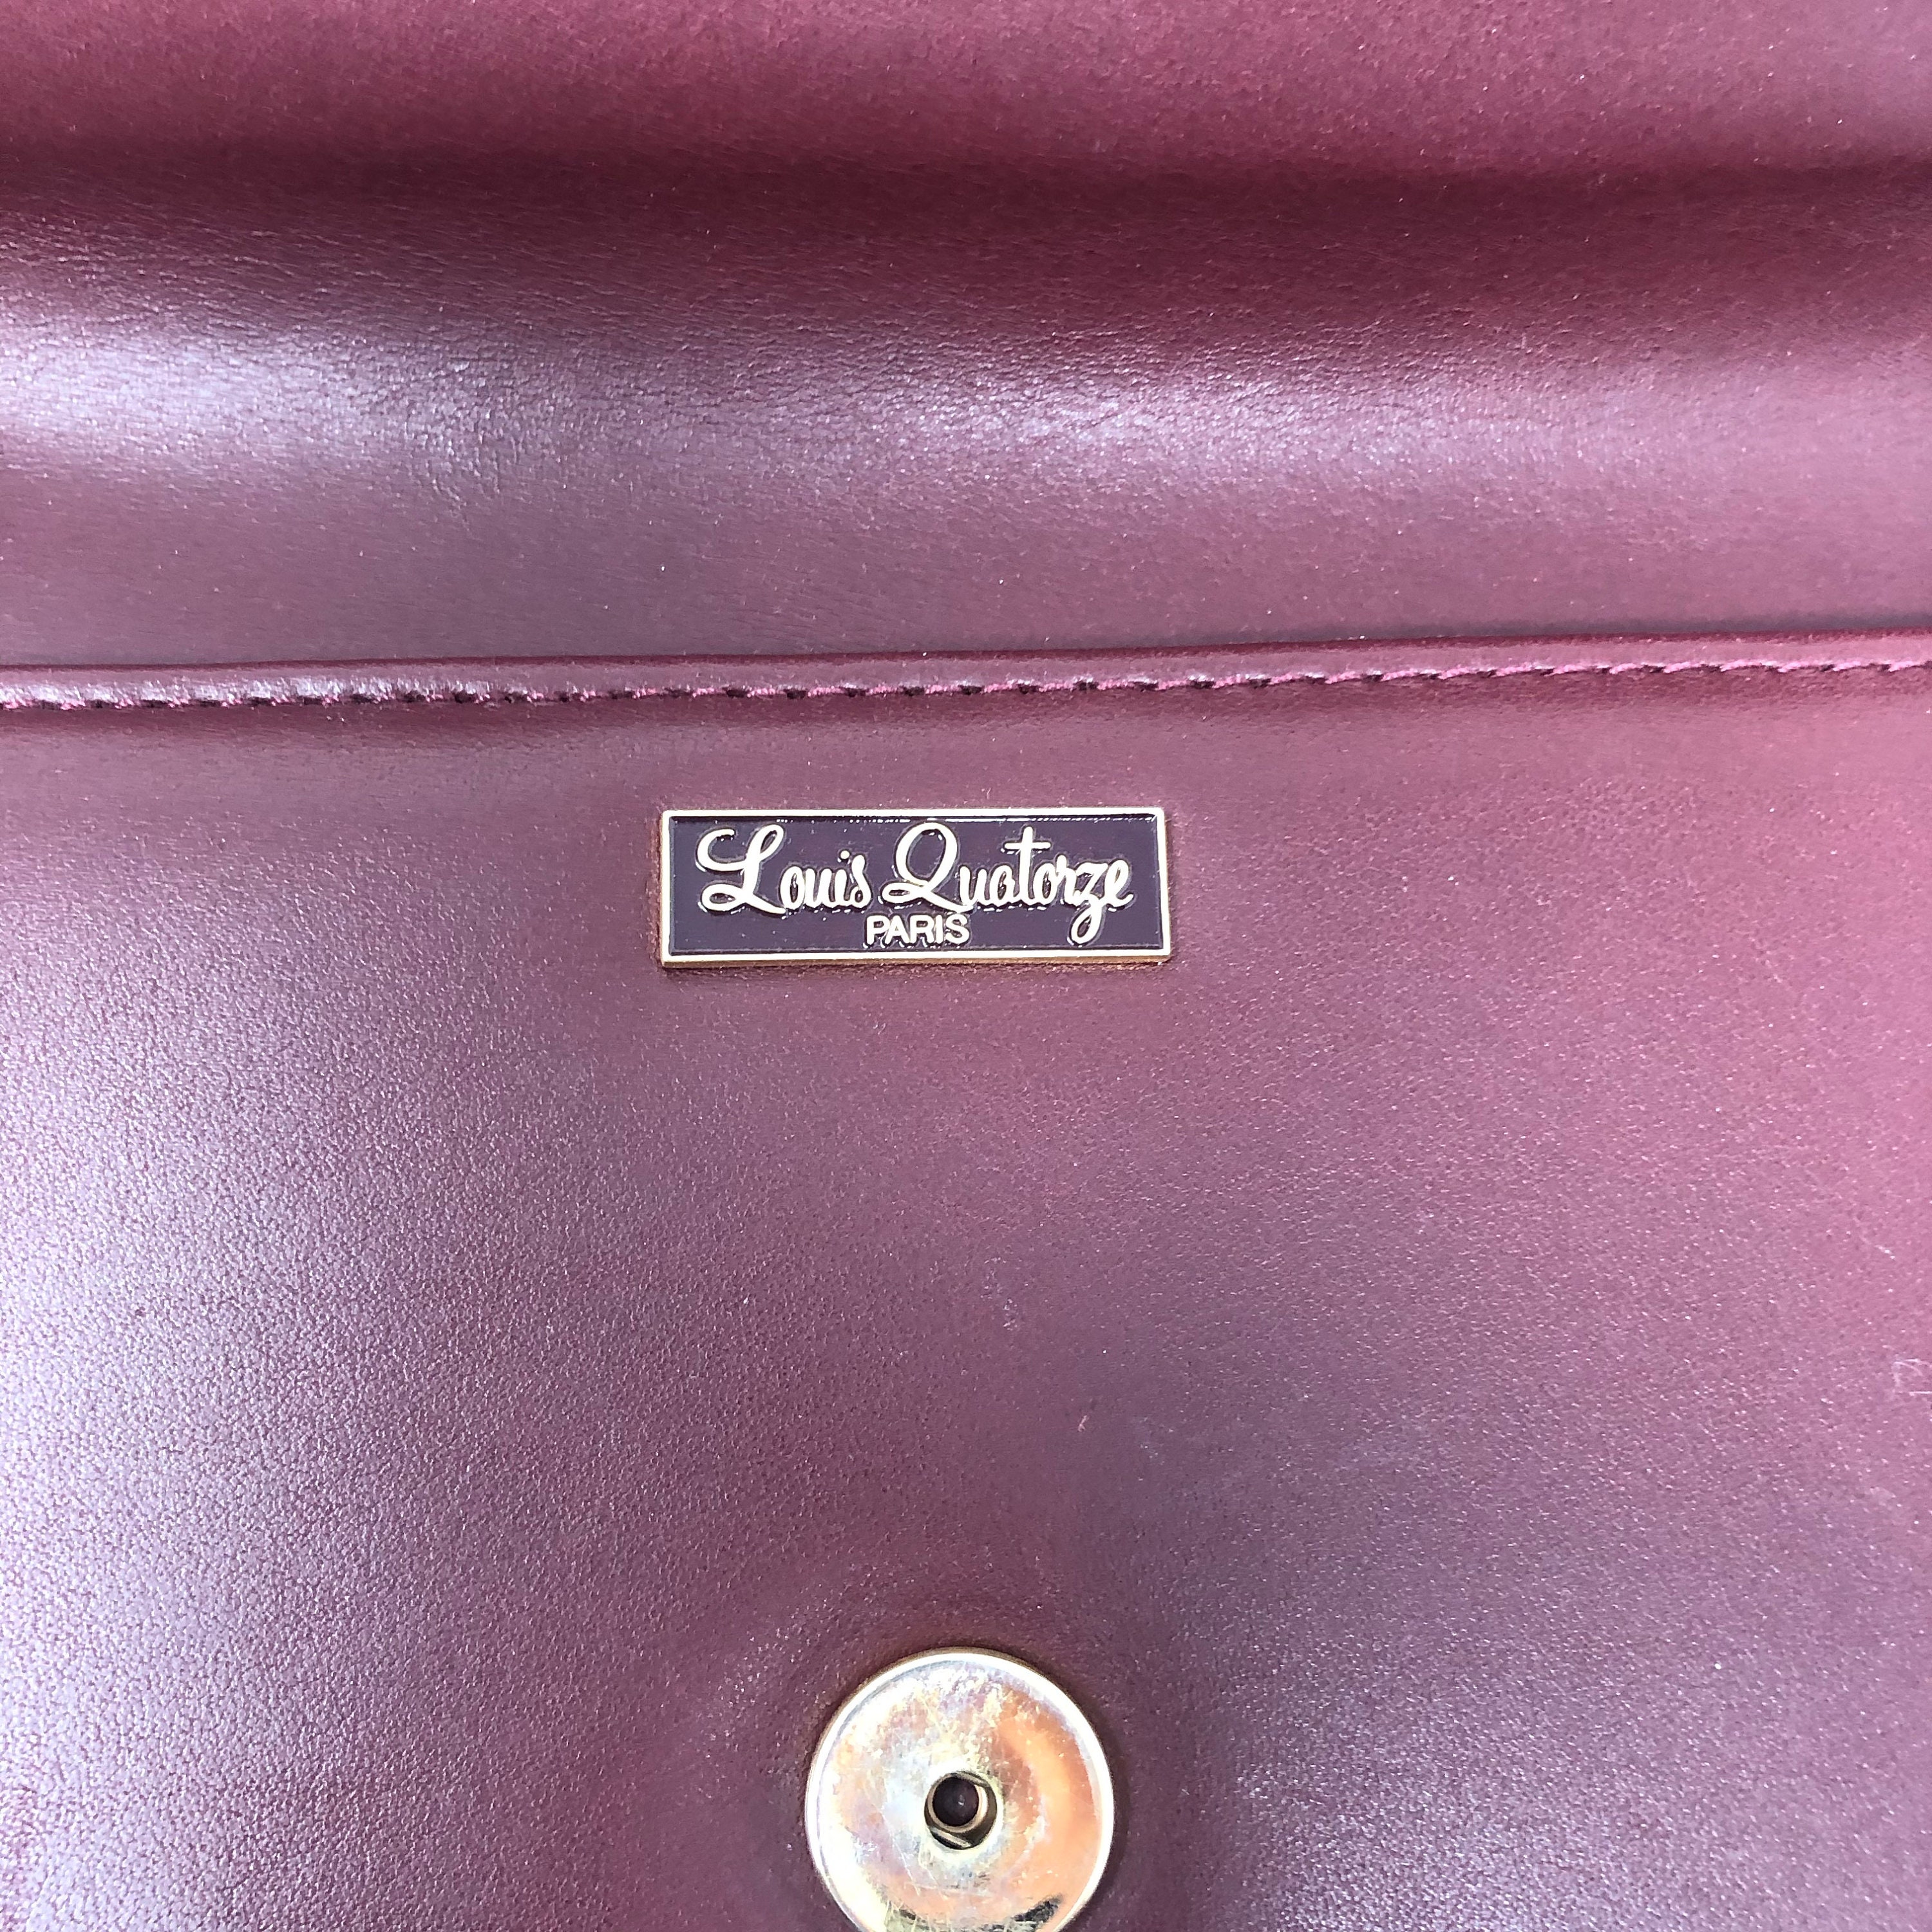 Vintage Louis Quatorze Paris Burgundy Oxblood Leather Envelope Clutch Wristlet